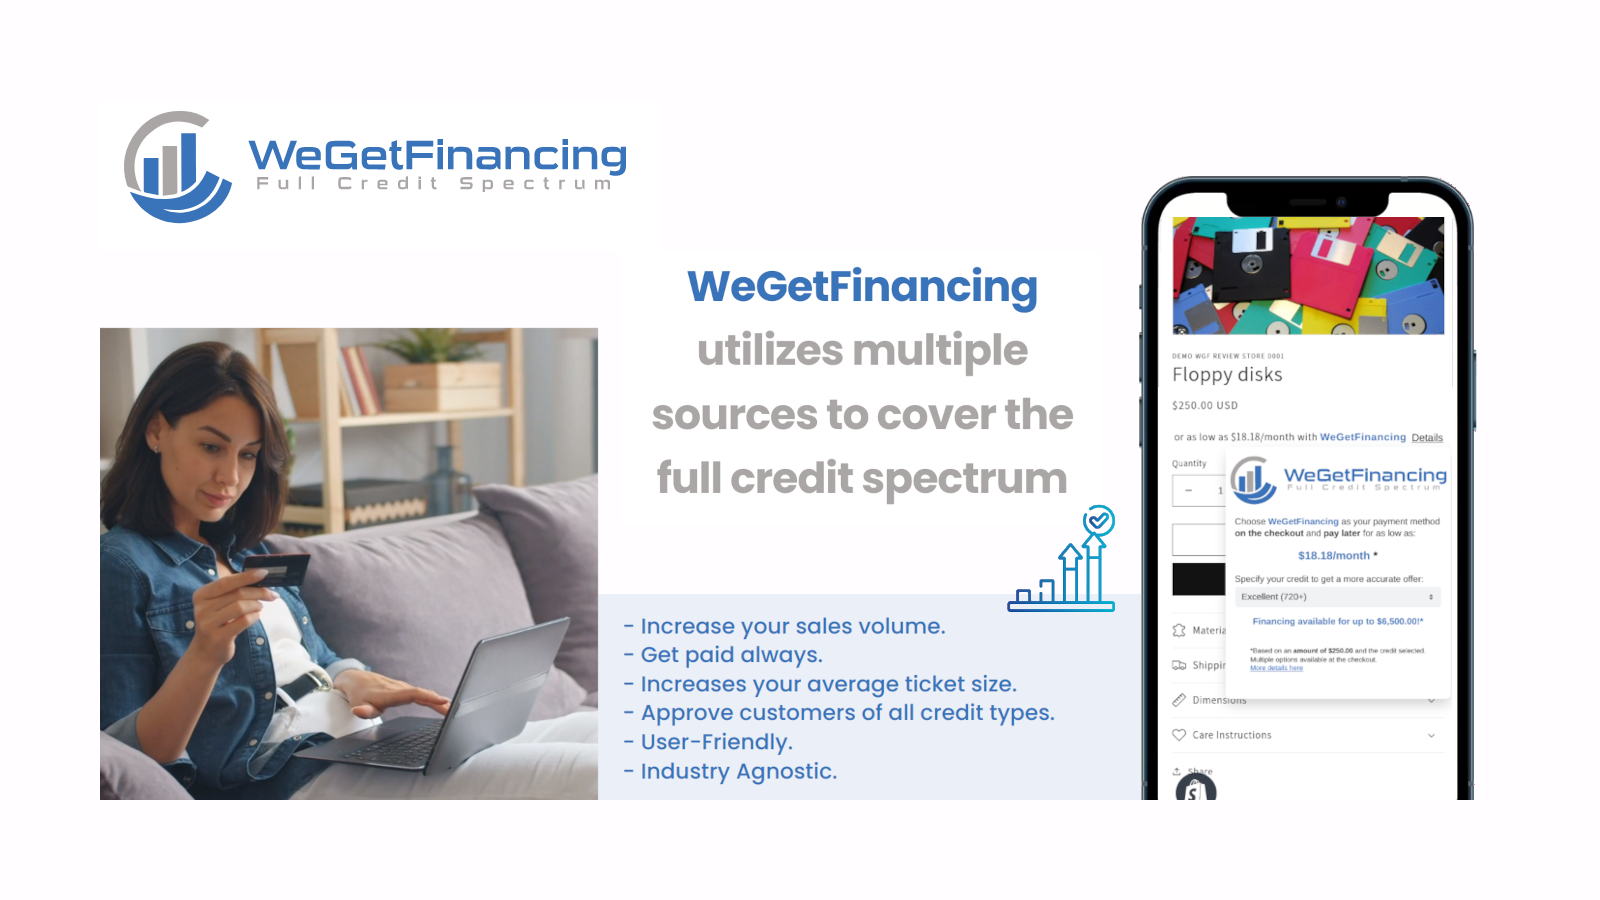 Øg dit salgsvolumen ved at tilbyde WeGetFinancing.